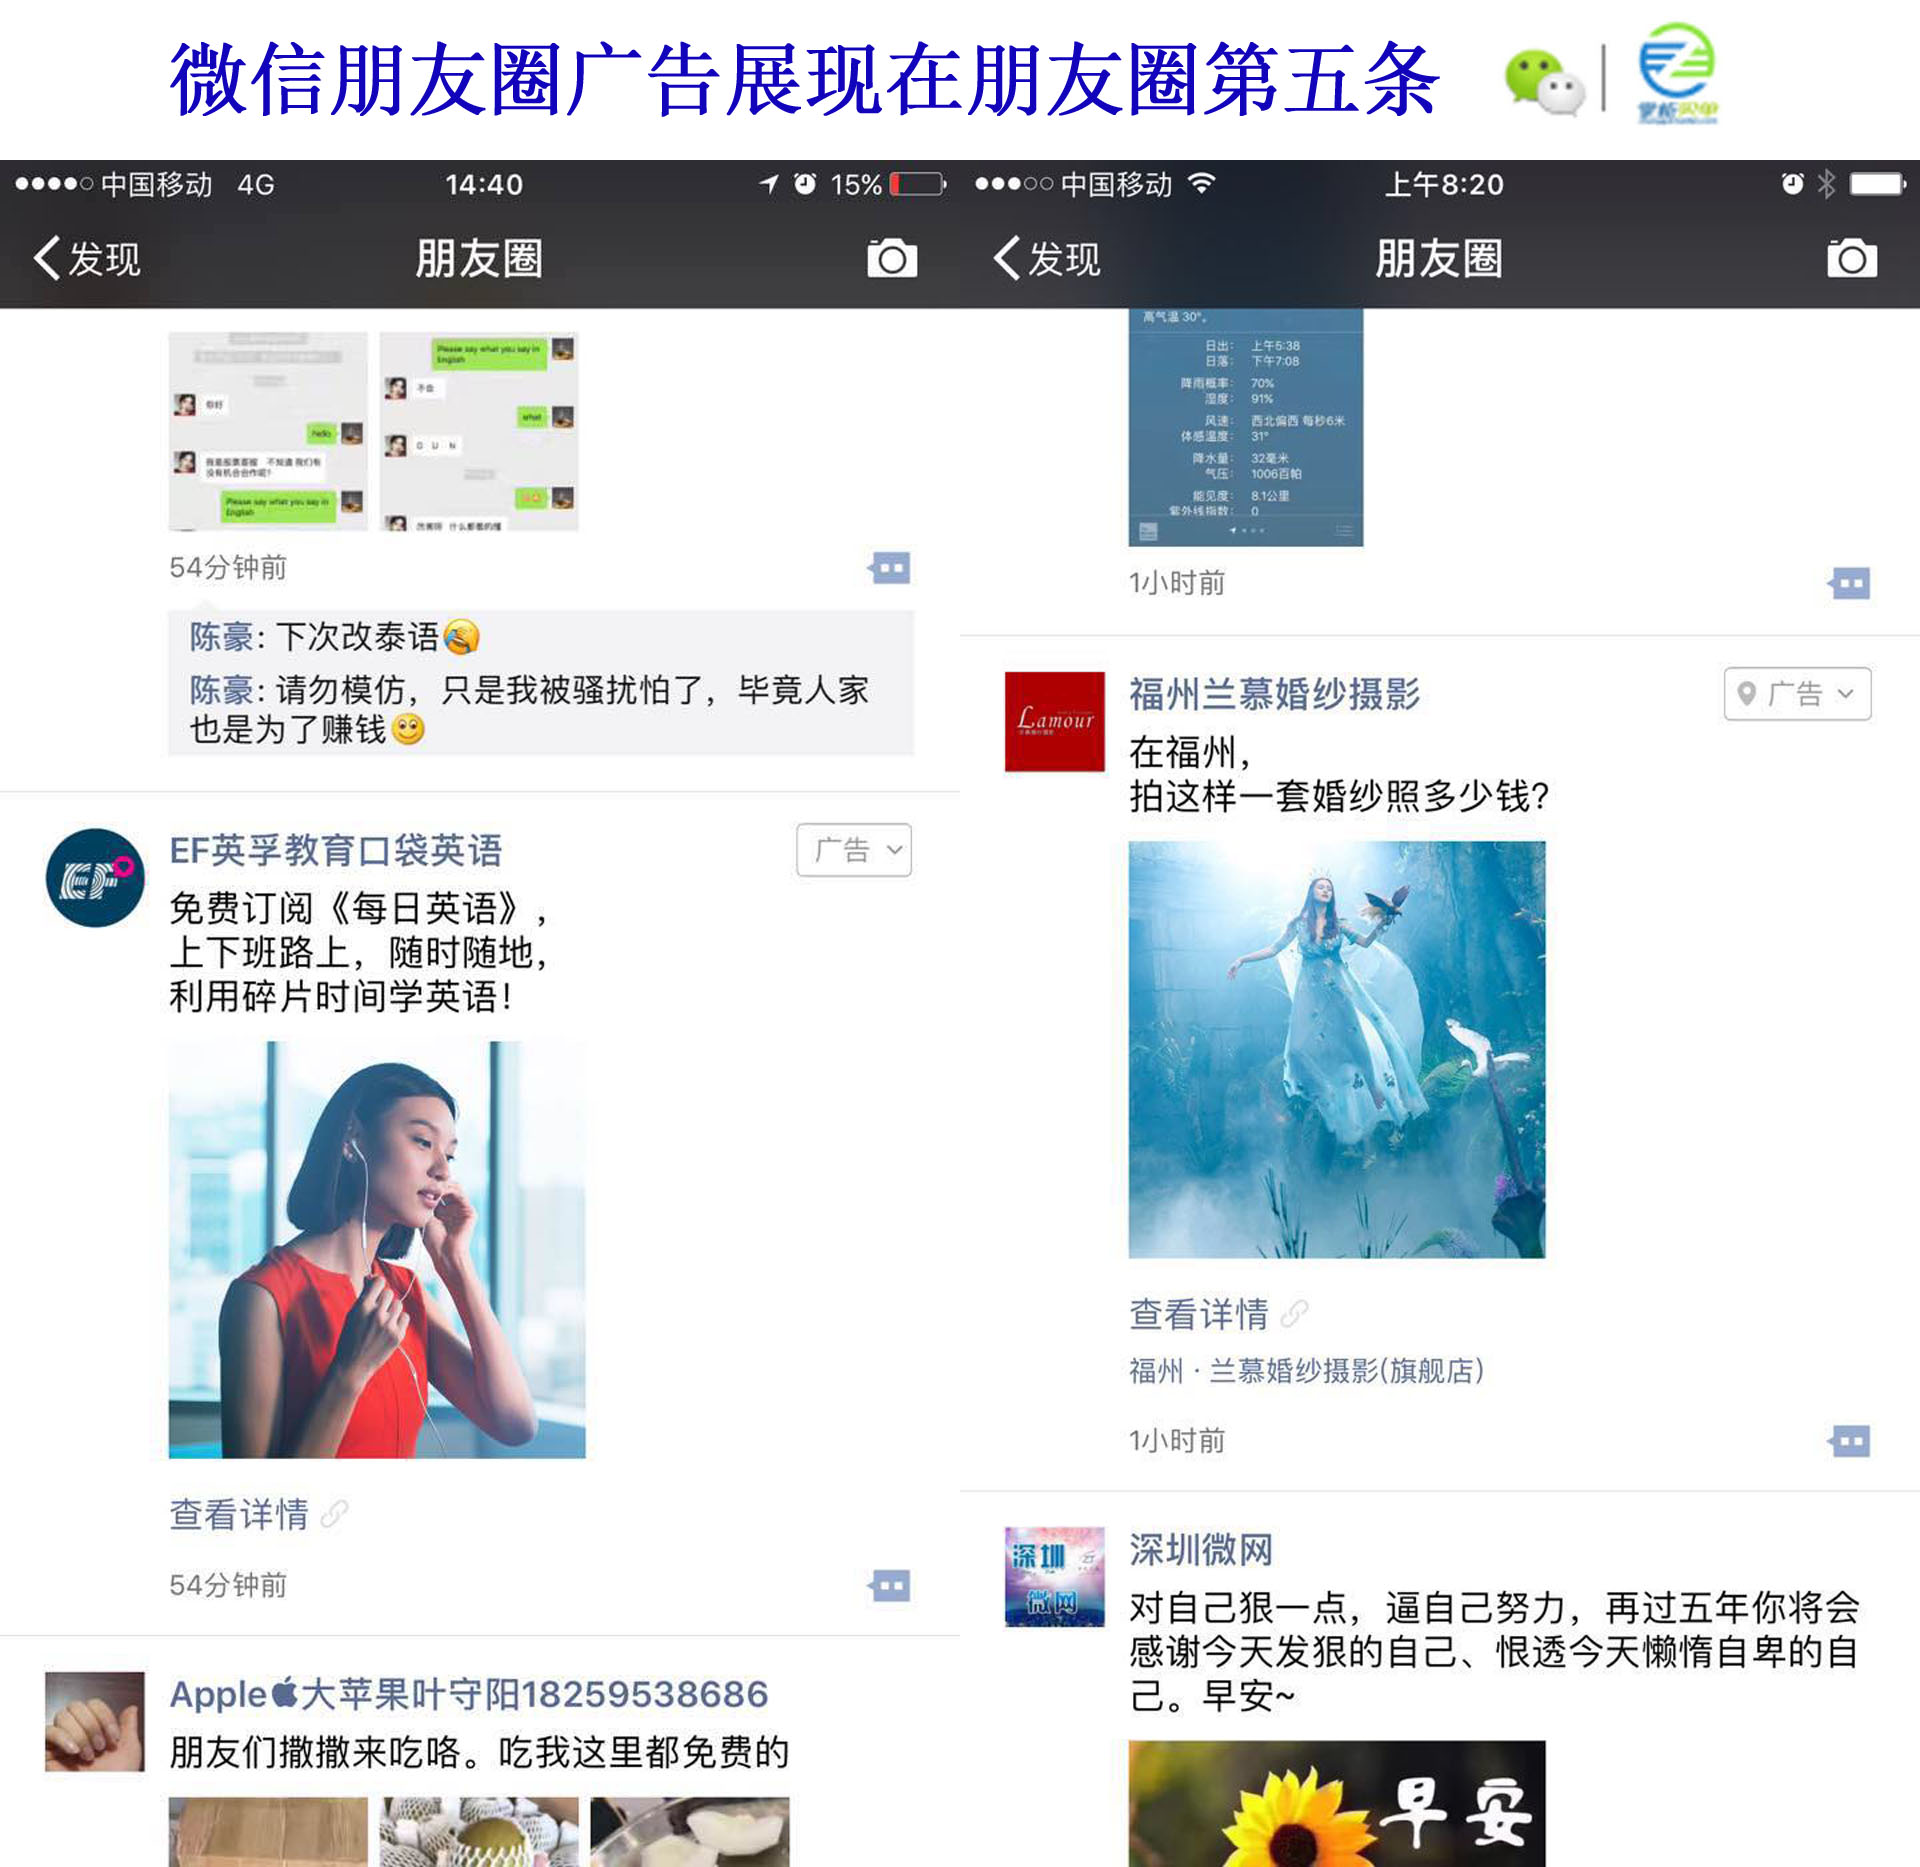 微信朋友圈广告代理商如何实现盈利_搜狐其它_搜狐网